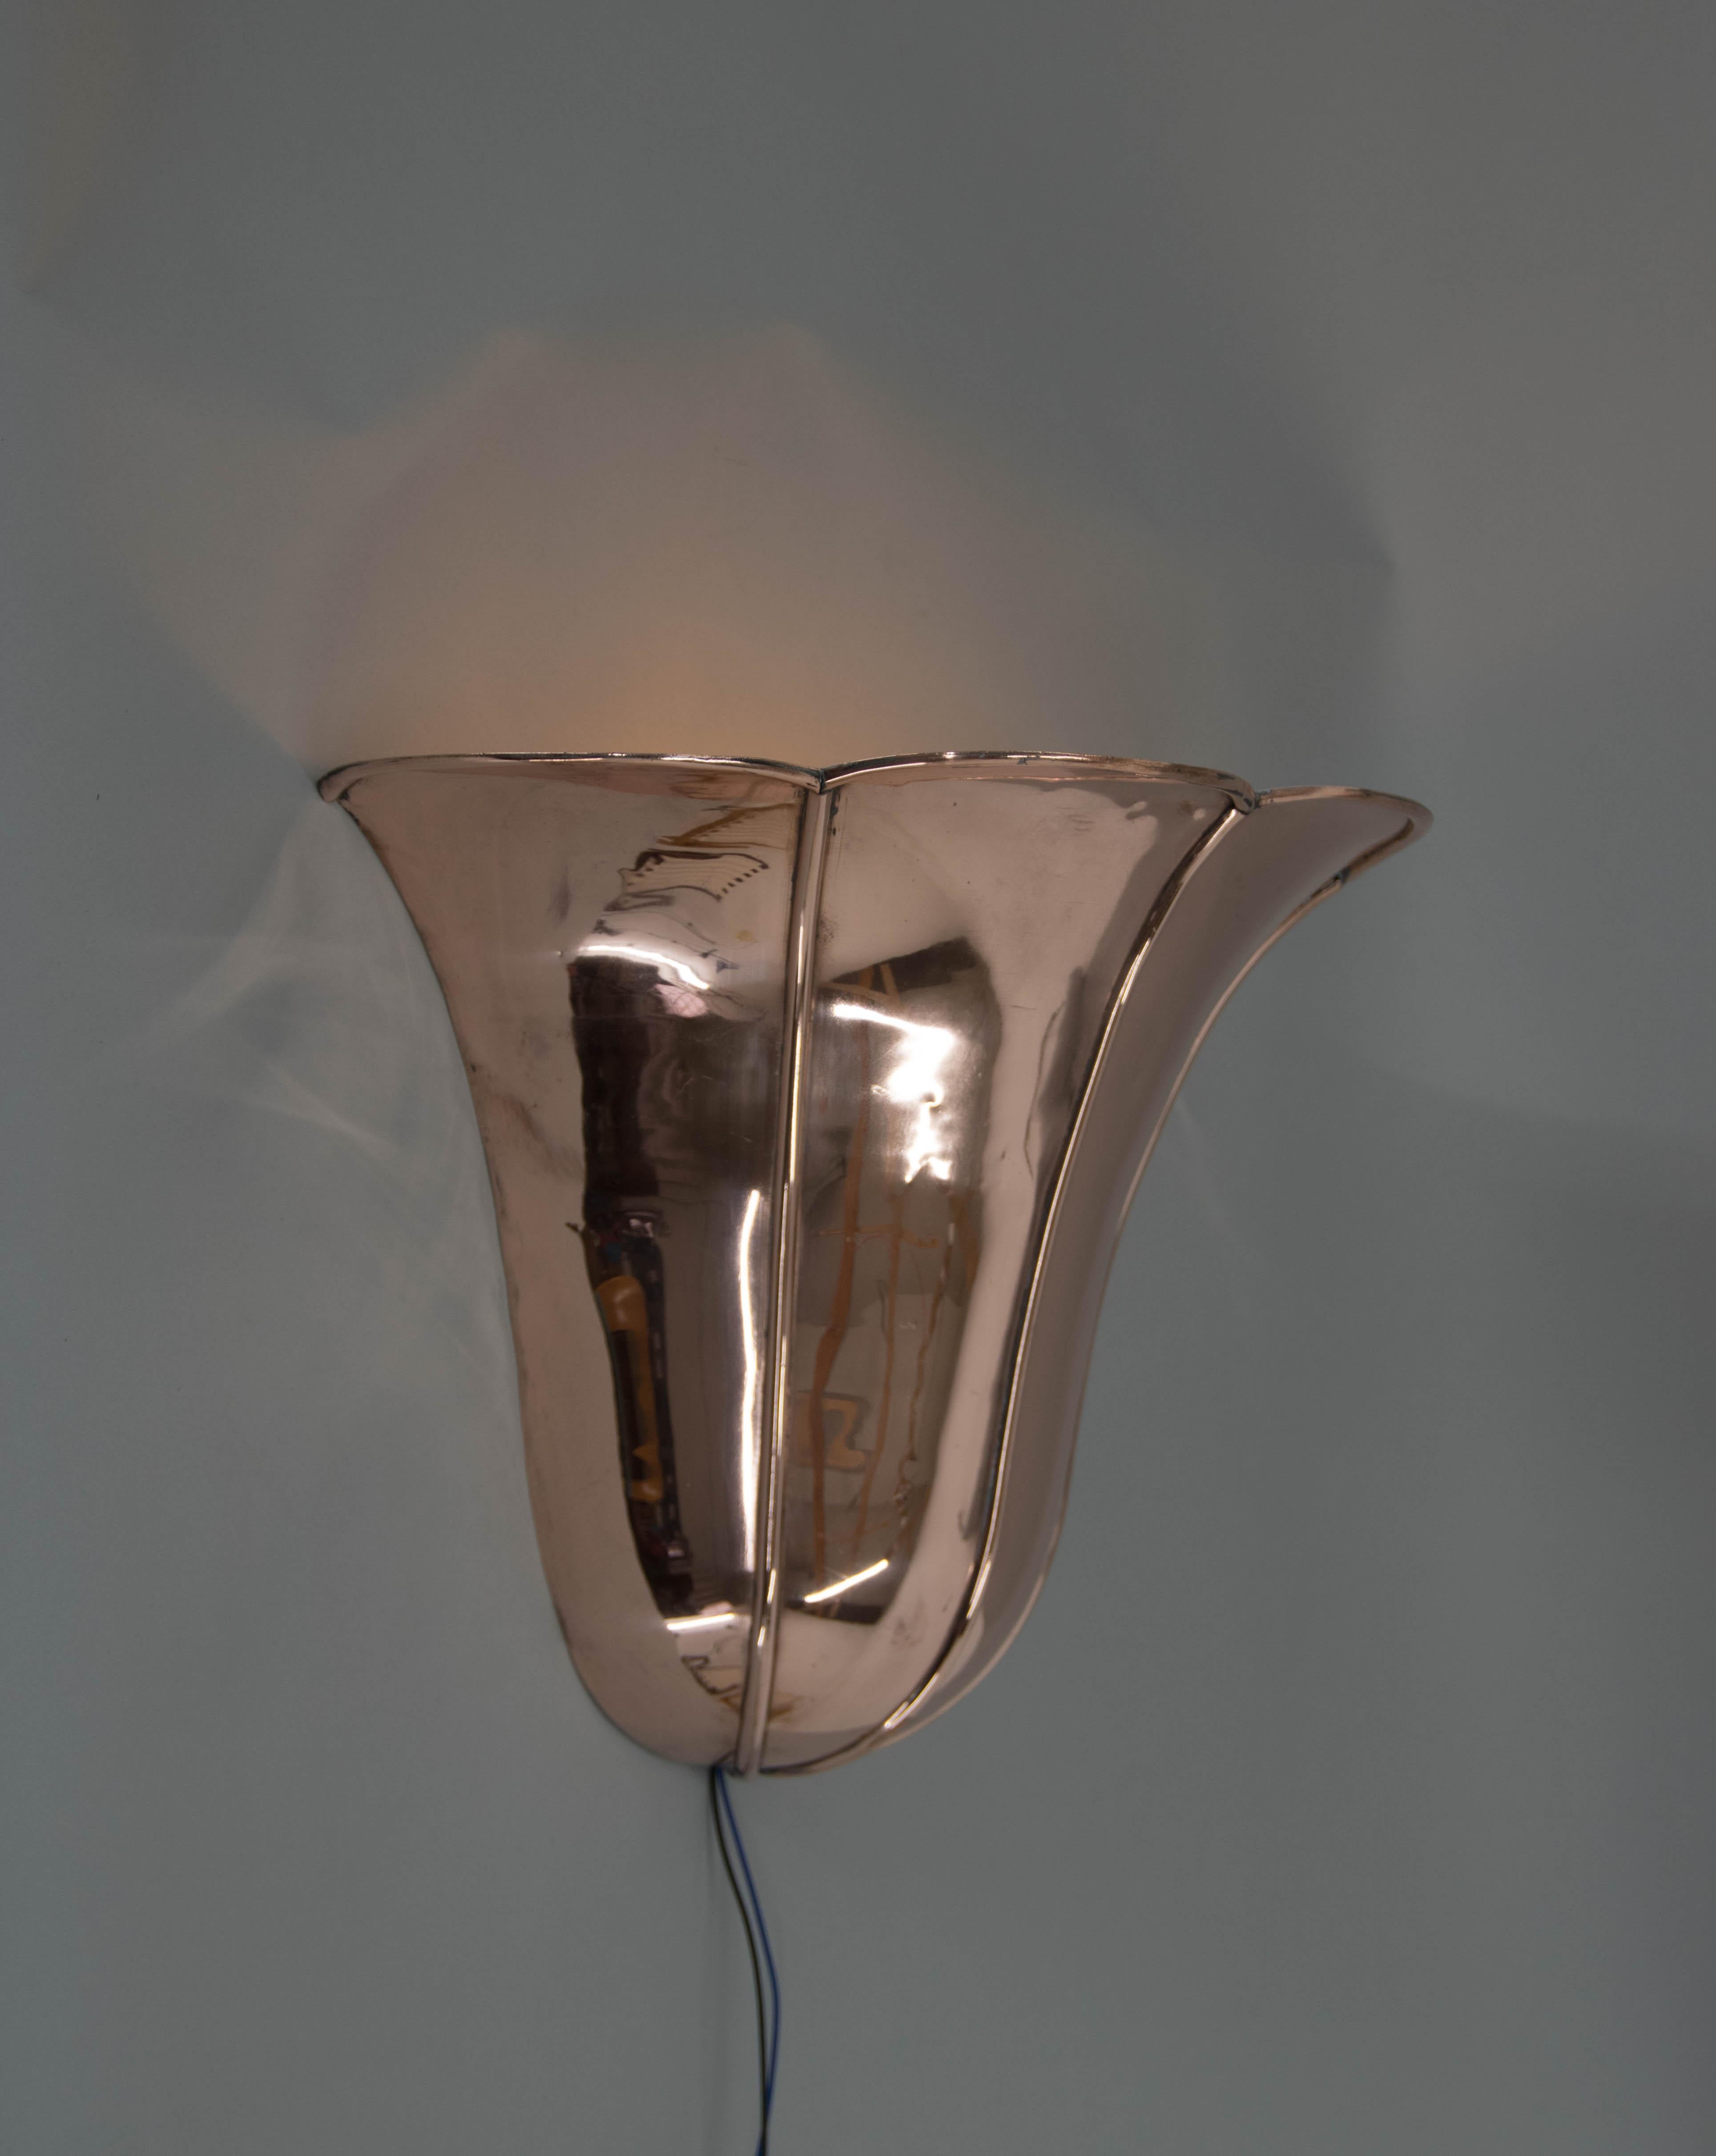 Wahrscheinlich die einzige ganz aus Kupfer gefertigte Wandlampe im Art-Déco-Stil, die in ihrer Art einzigartig ist. Hergestellt um 1935 und komplett restauriert: Kupfer nachgearbeitet, neu verkabelt - 1x60W, E25-E27 Glühbirnen. 
US-Verkabelung